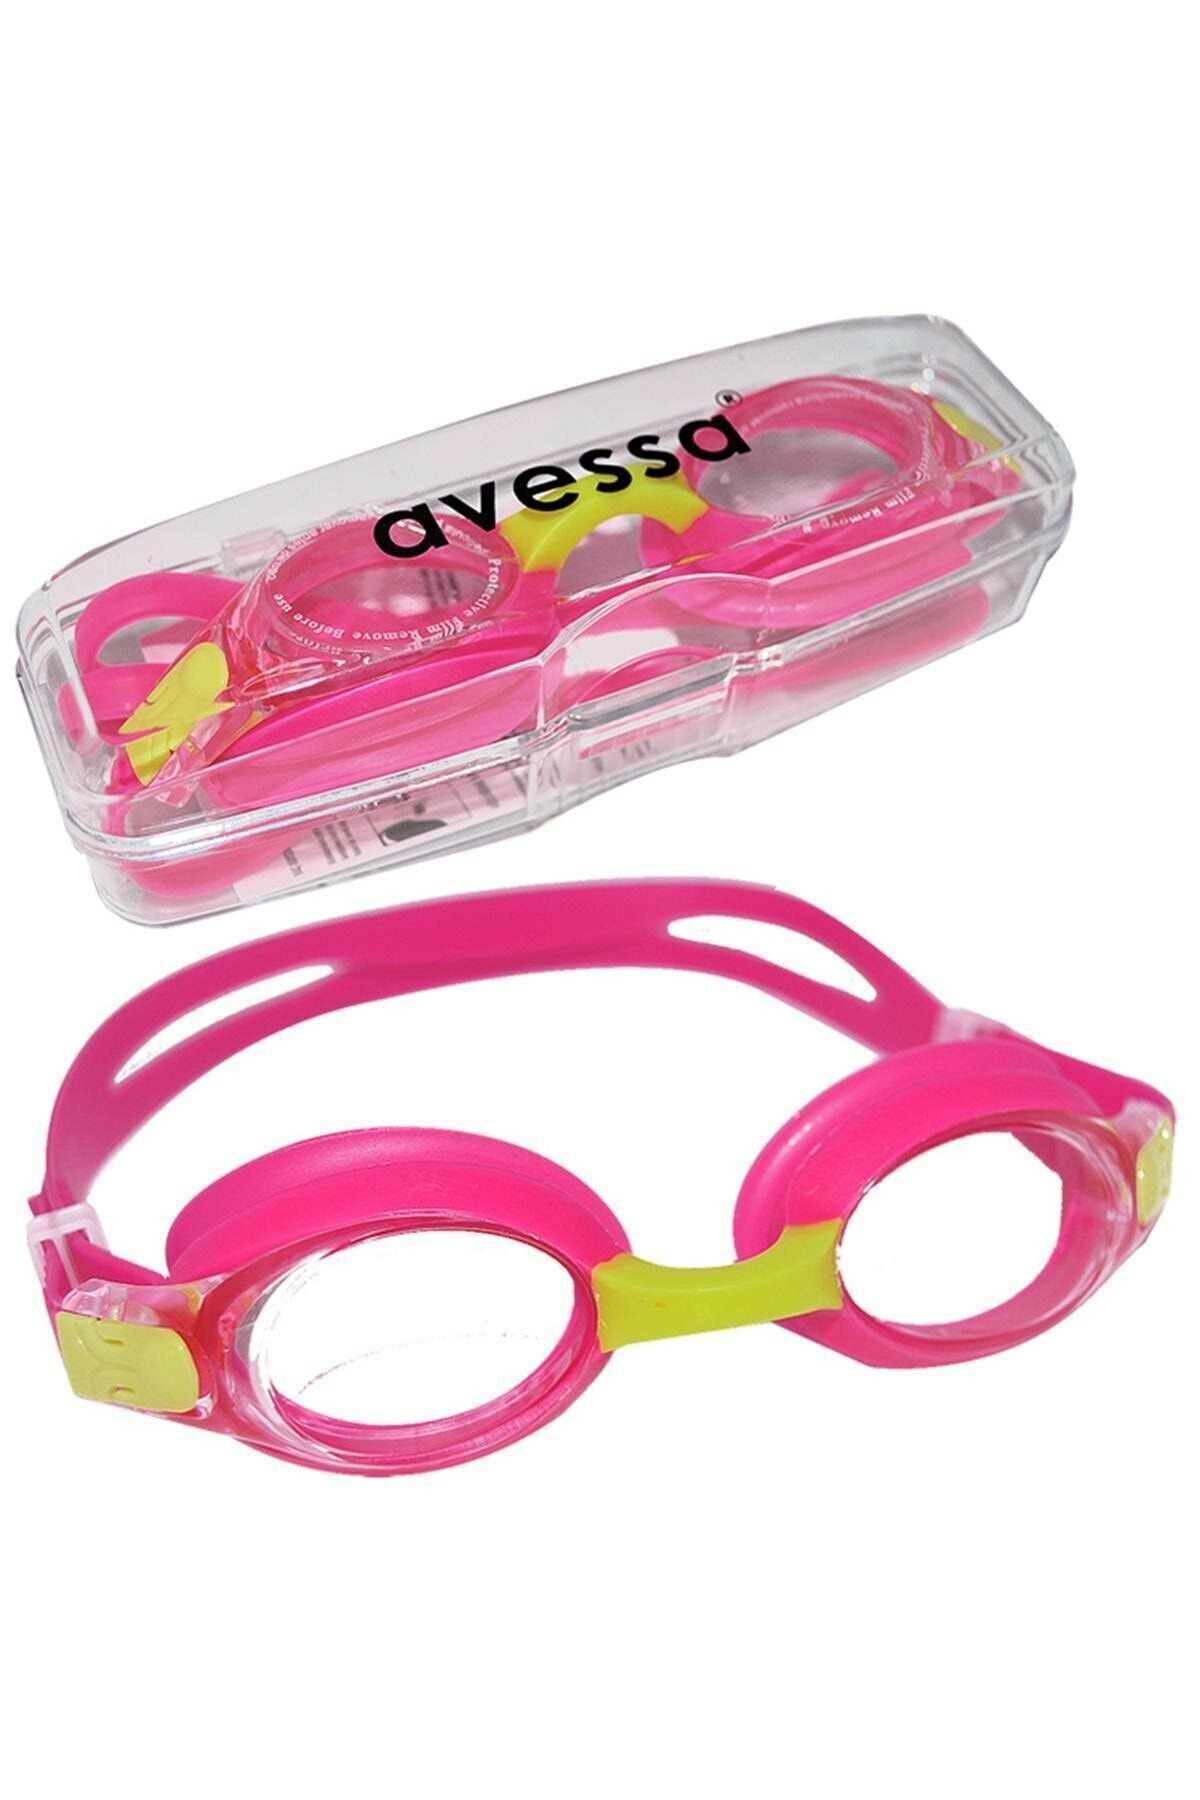 Avessa Pembe Çocuk Yüzücü Gözlüğü - Deniz Gözlüğü - Havuz Gözlüğü - Gözlük